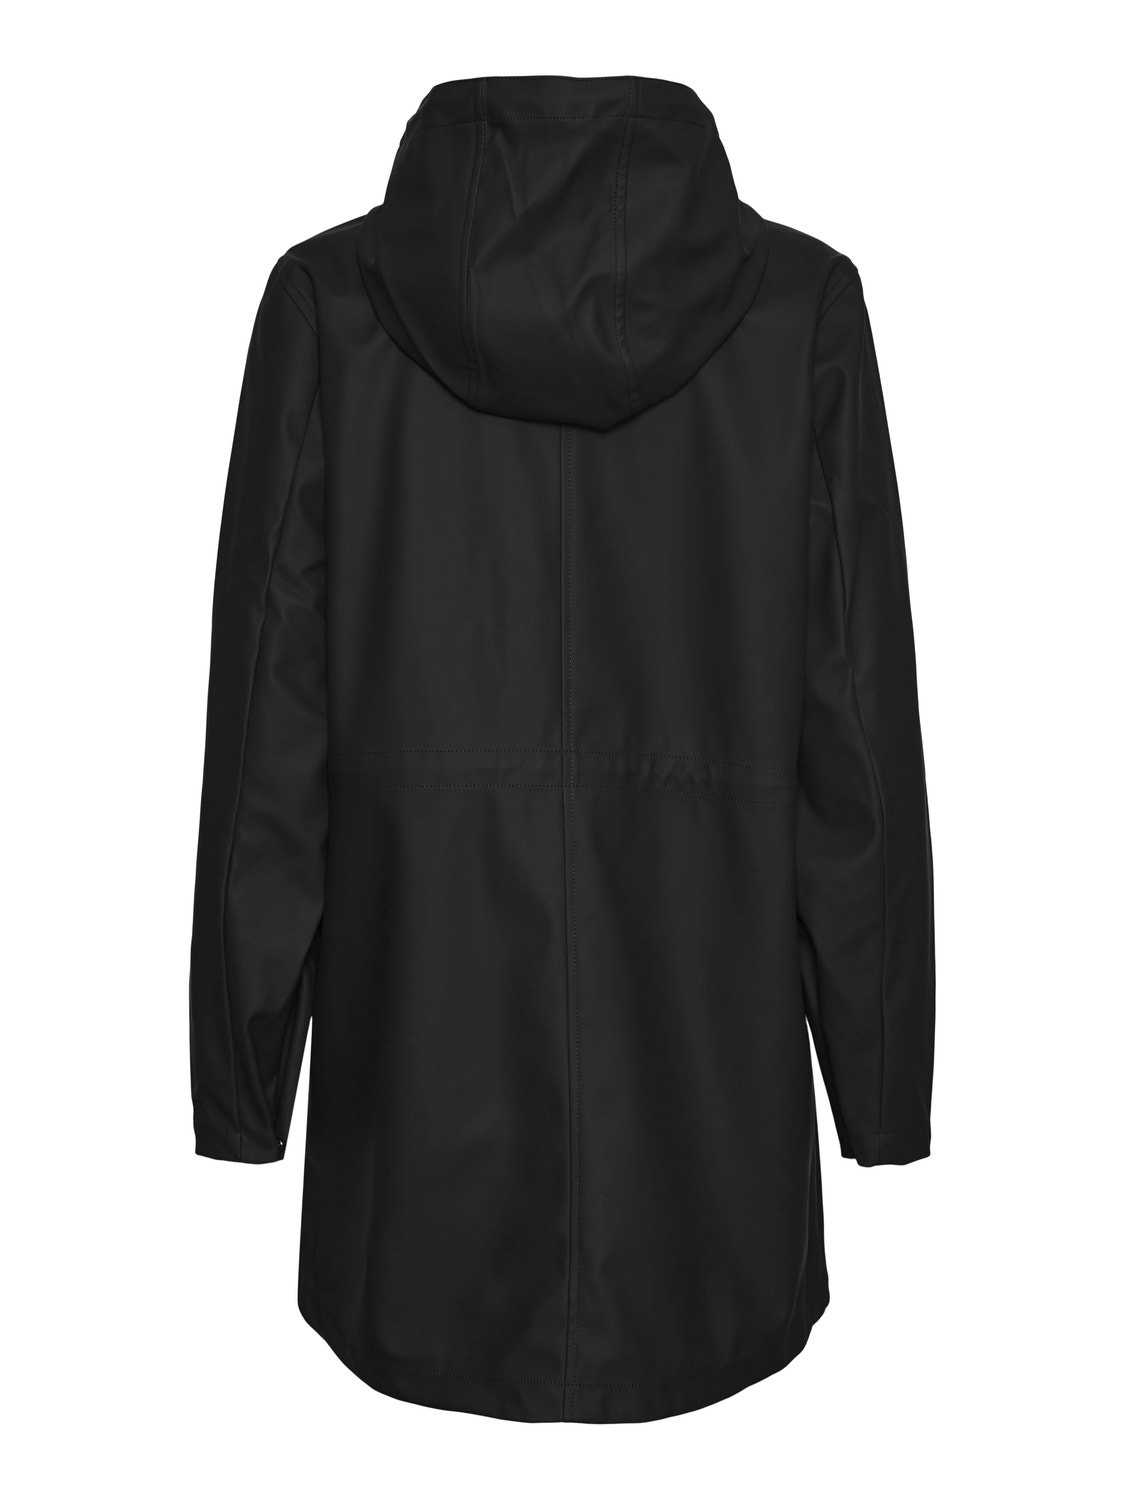 Vero Moda VMMALOU Raincoat -Black - 10266982